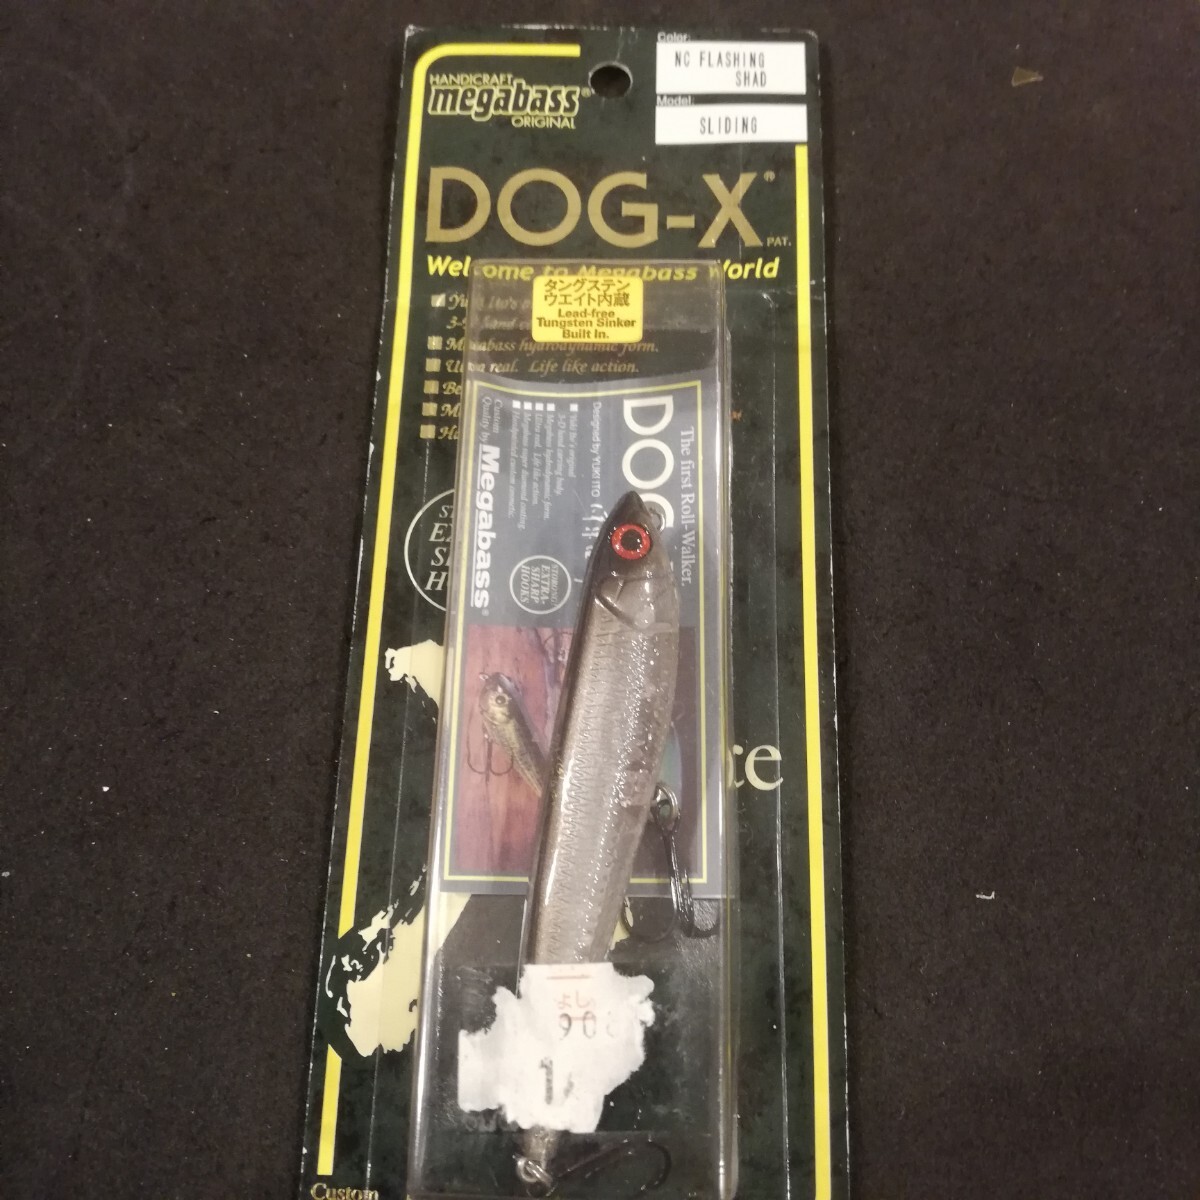 メガバス dog-x ドッグX nc flashing shadの画像2